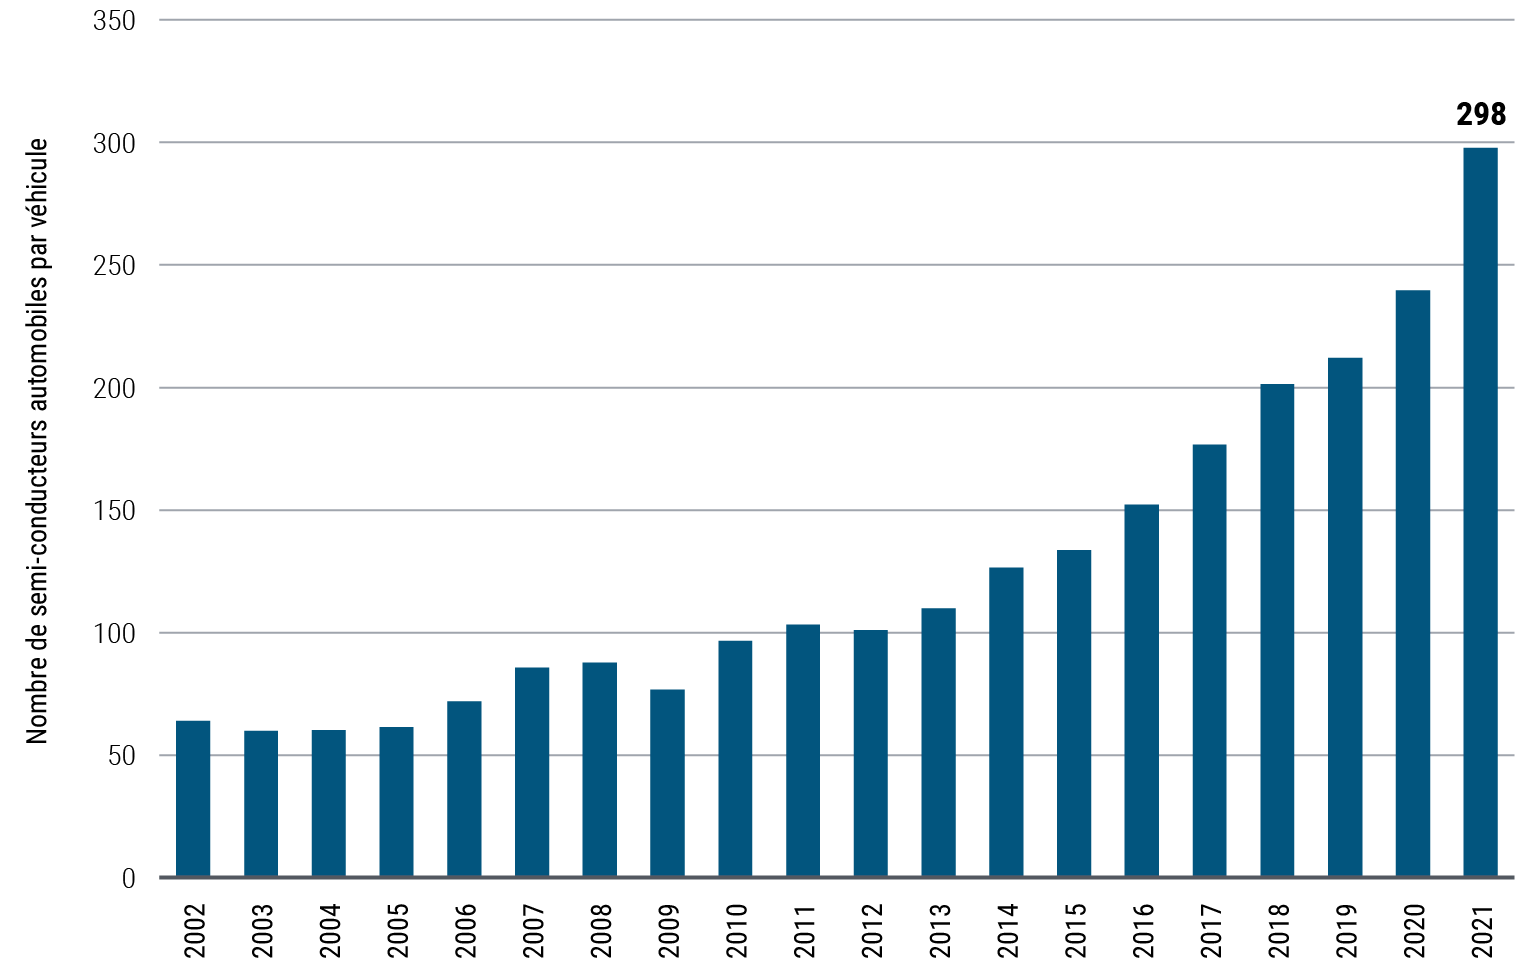 La Figure 2 est un graphique en barres représentant l'évolution du nombre moyen de semi-conducteurs automobiles par véhicule entre 2002 et 2021. Au cours de cette période, ce nombre est passé de 64 à 298 et la progression annuelle la plus marquée est intervenue entre 2020 et 2021. Le nombre d'unités reflète les livraisons mondiales de microprocesseurs automobiles et de semi-conducteurs analogiques automobiles rapportées à la production mondiale de véhicules de tourisme. Les données 2021 correspondent aux trois premiers trimestres annualisés.